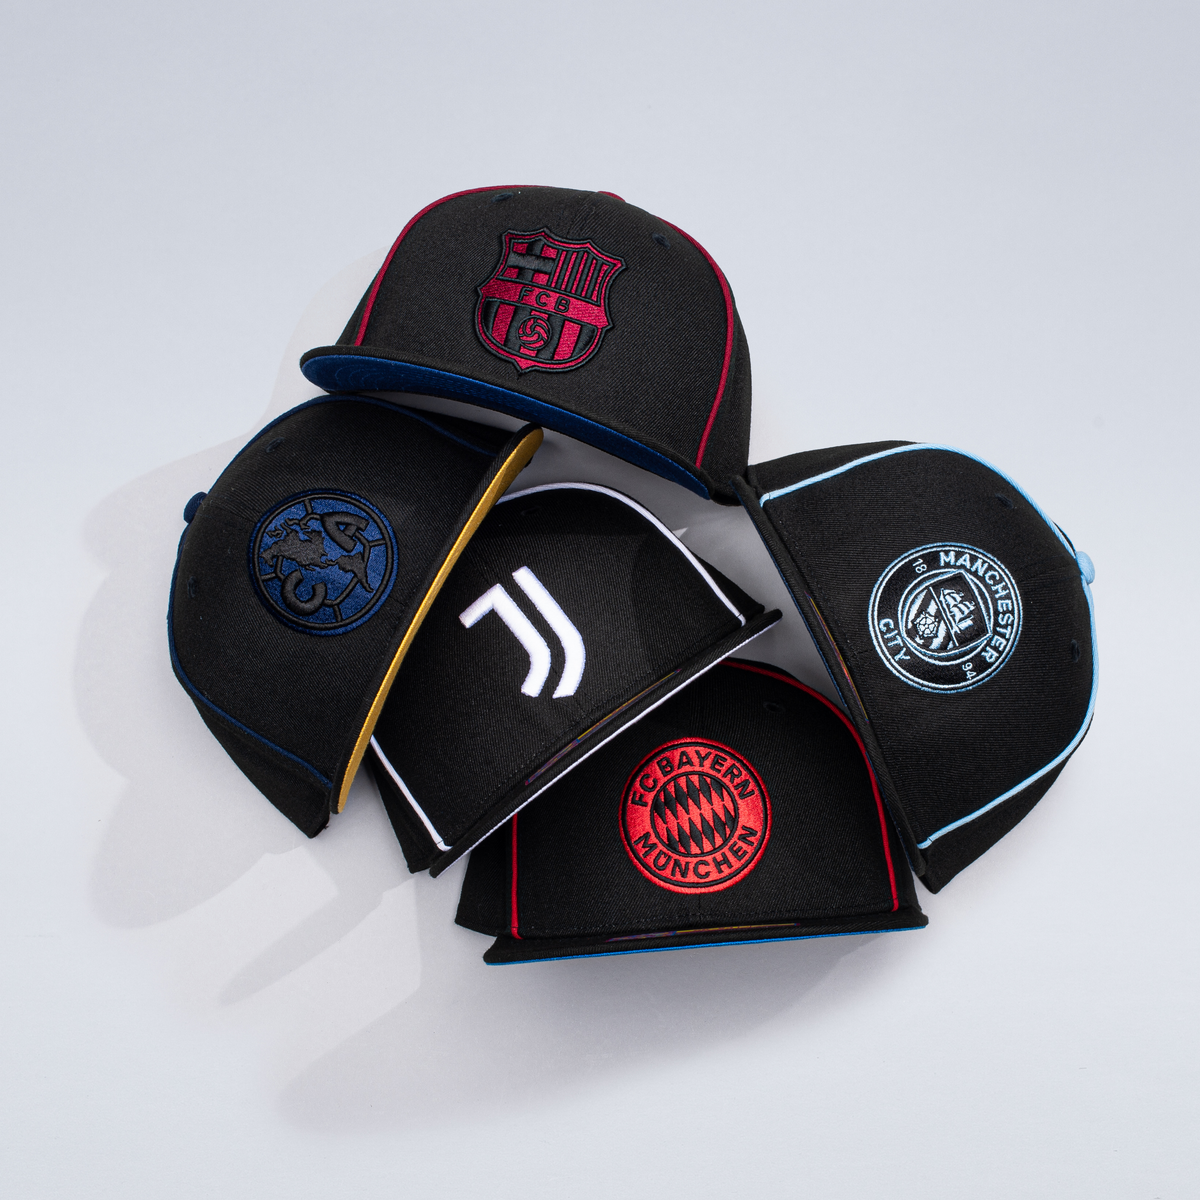 Black Anchor, la marca de gorras preferida de los futbolistas de La Liga